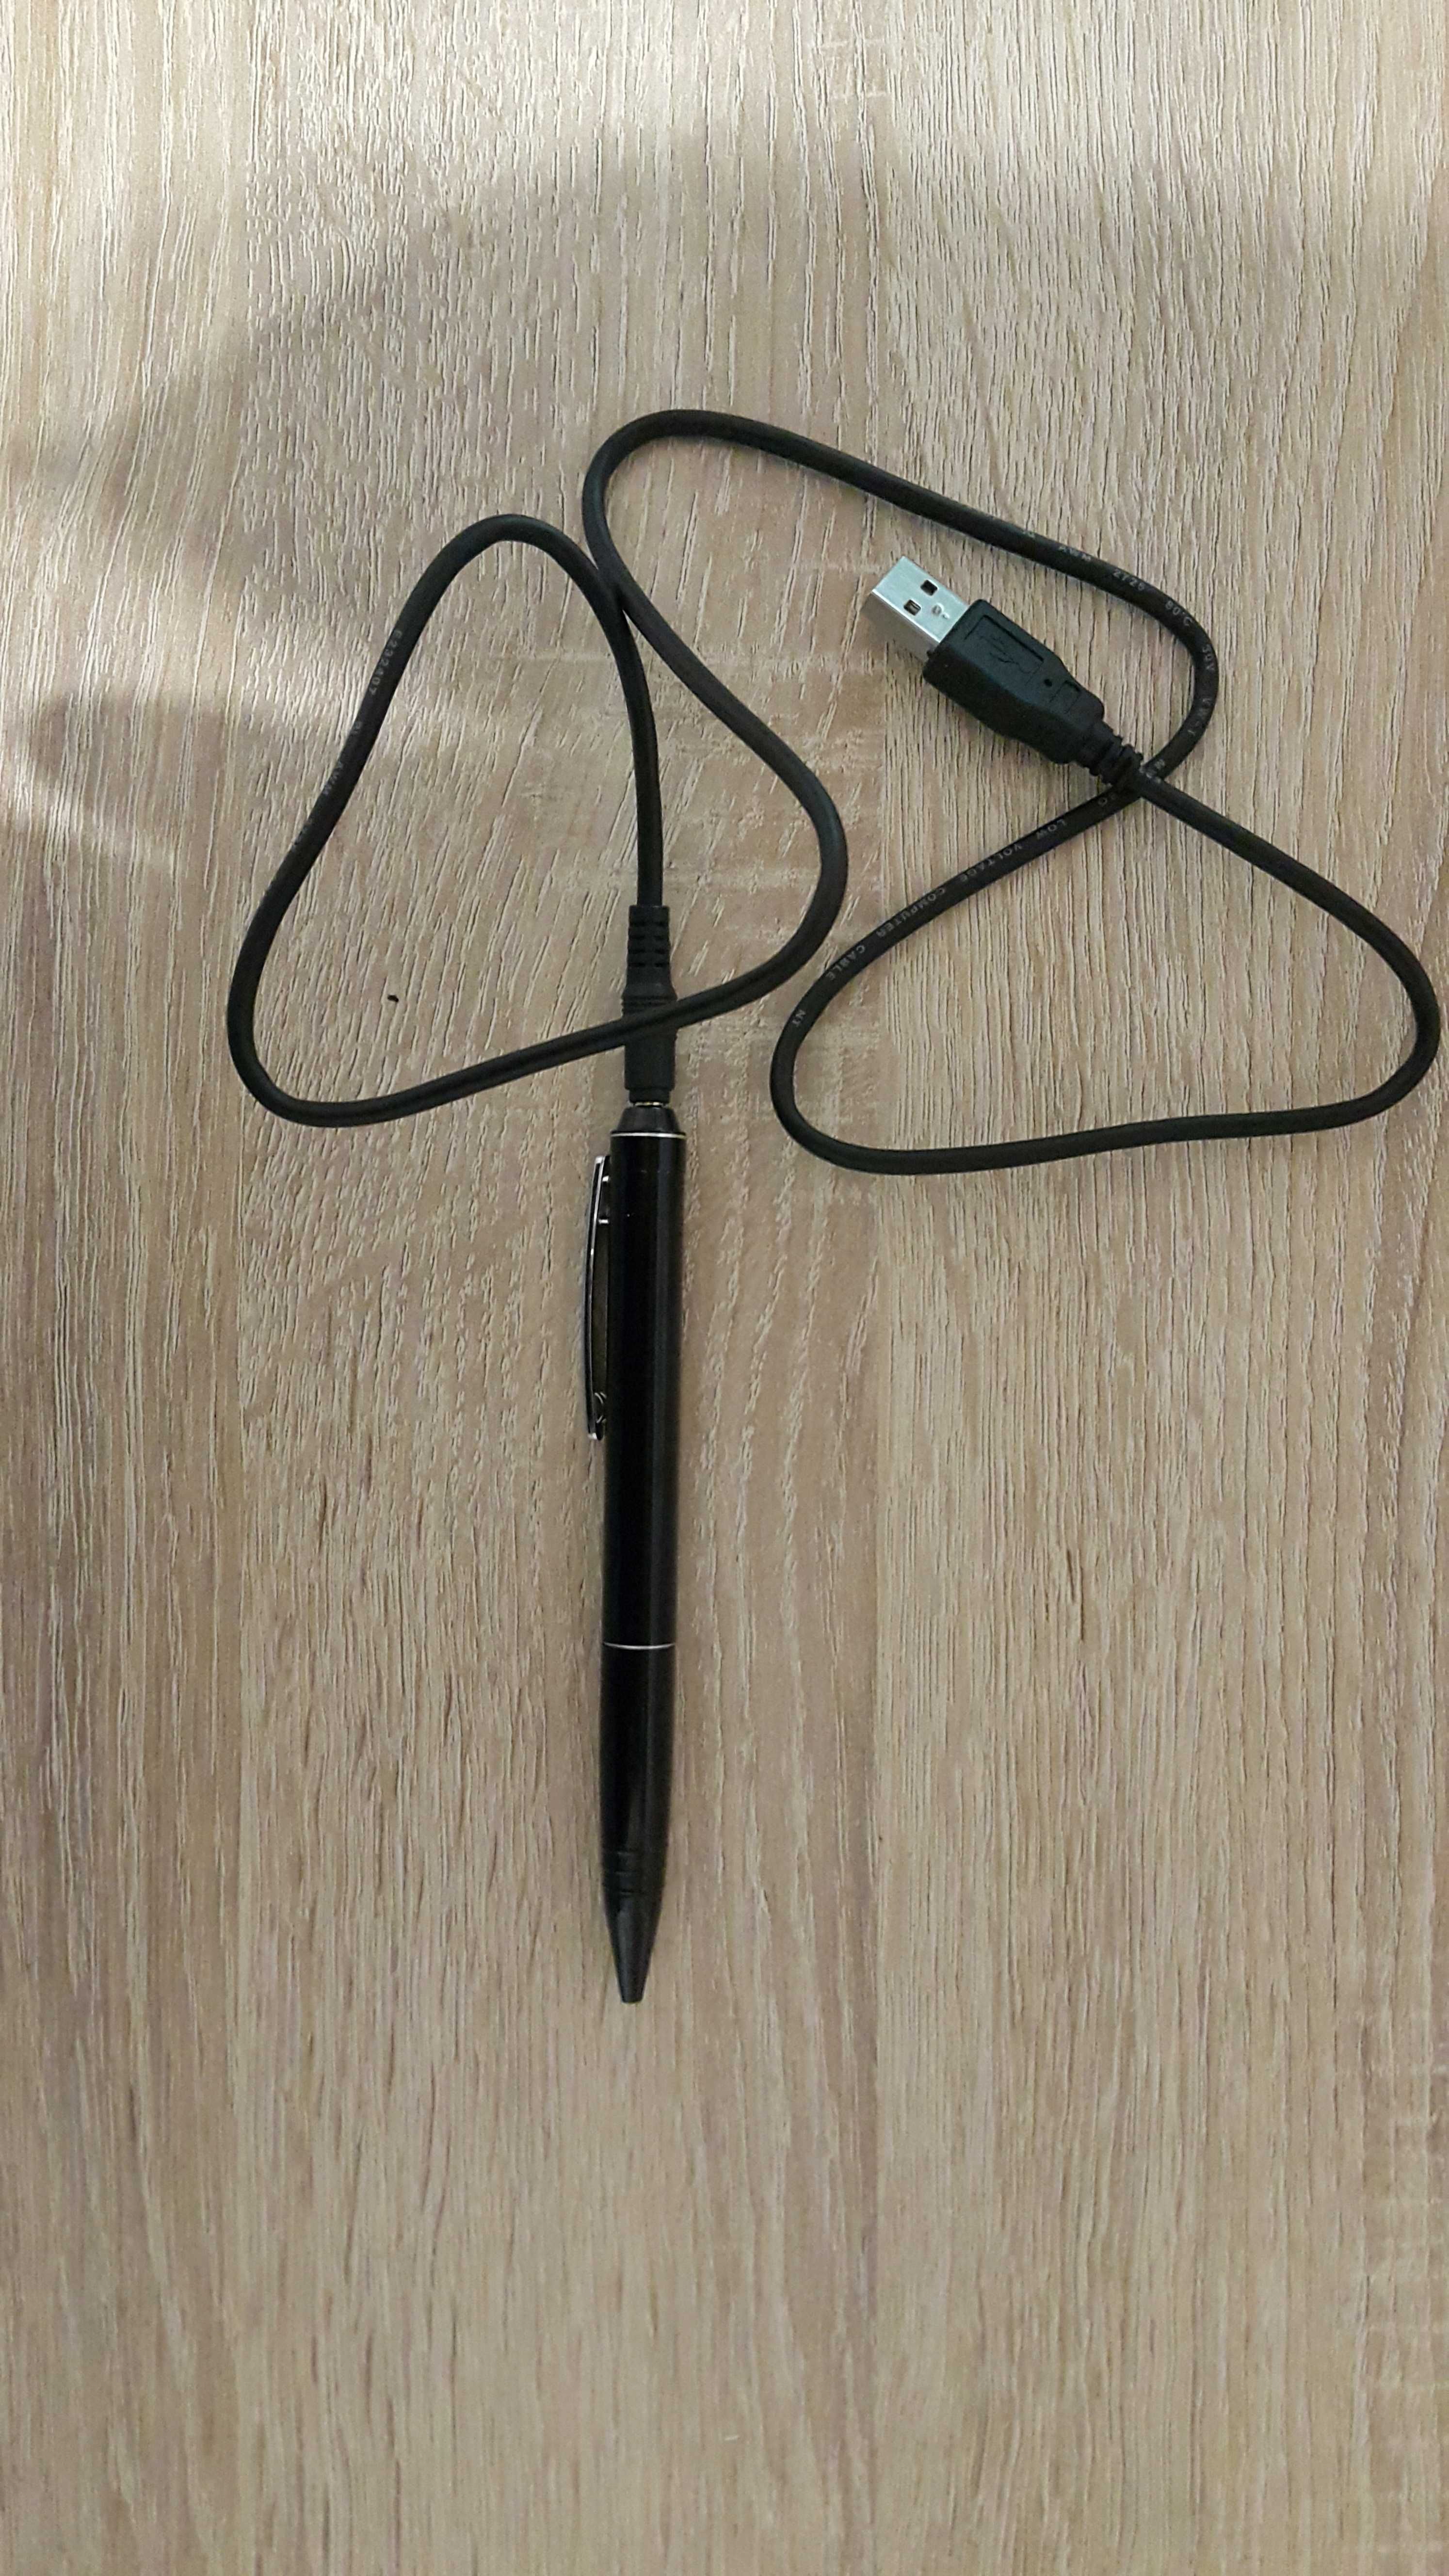 2w1 - dyktafon + długopis